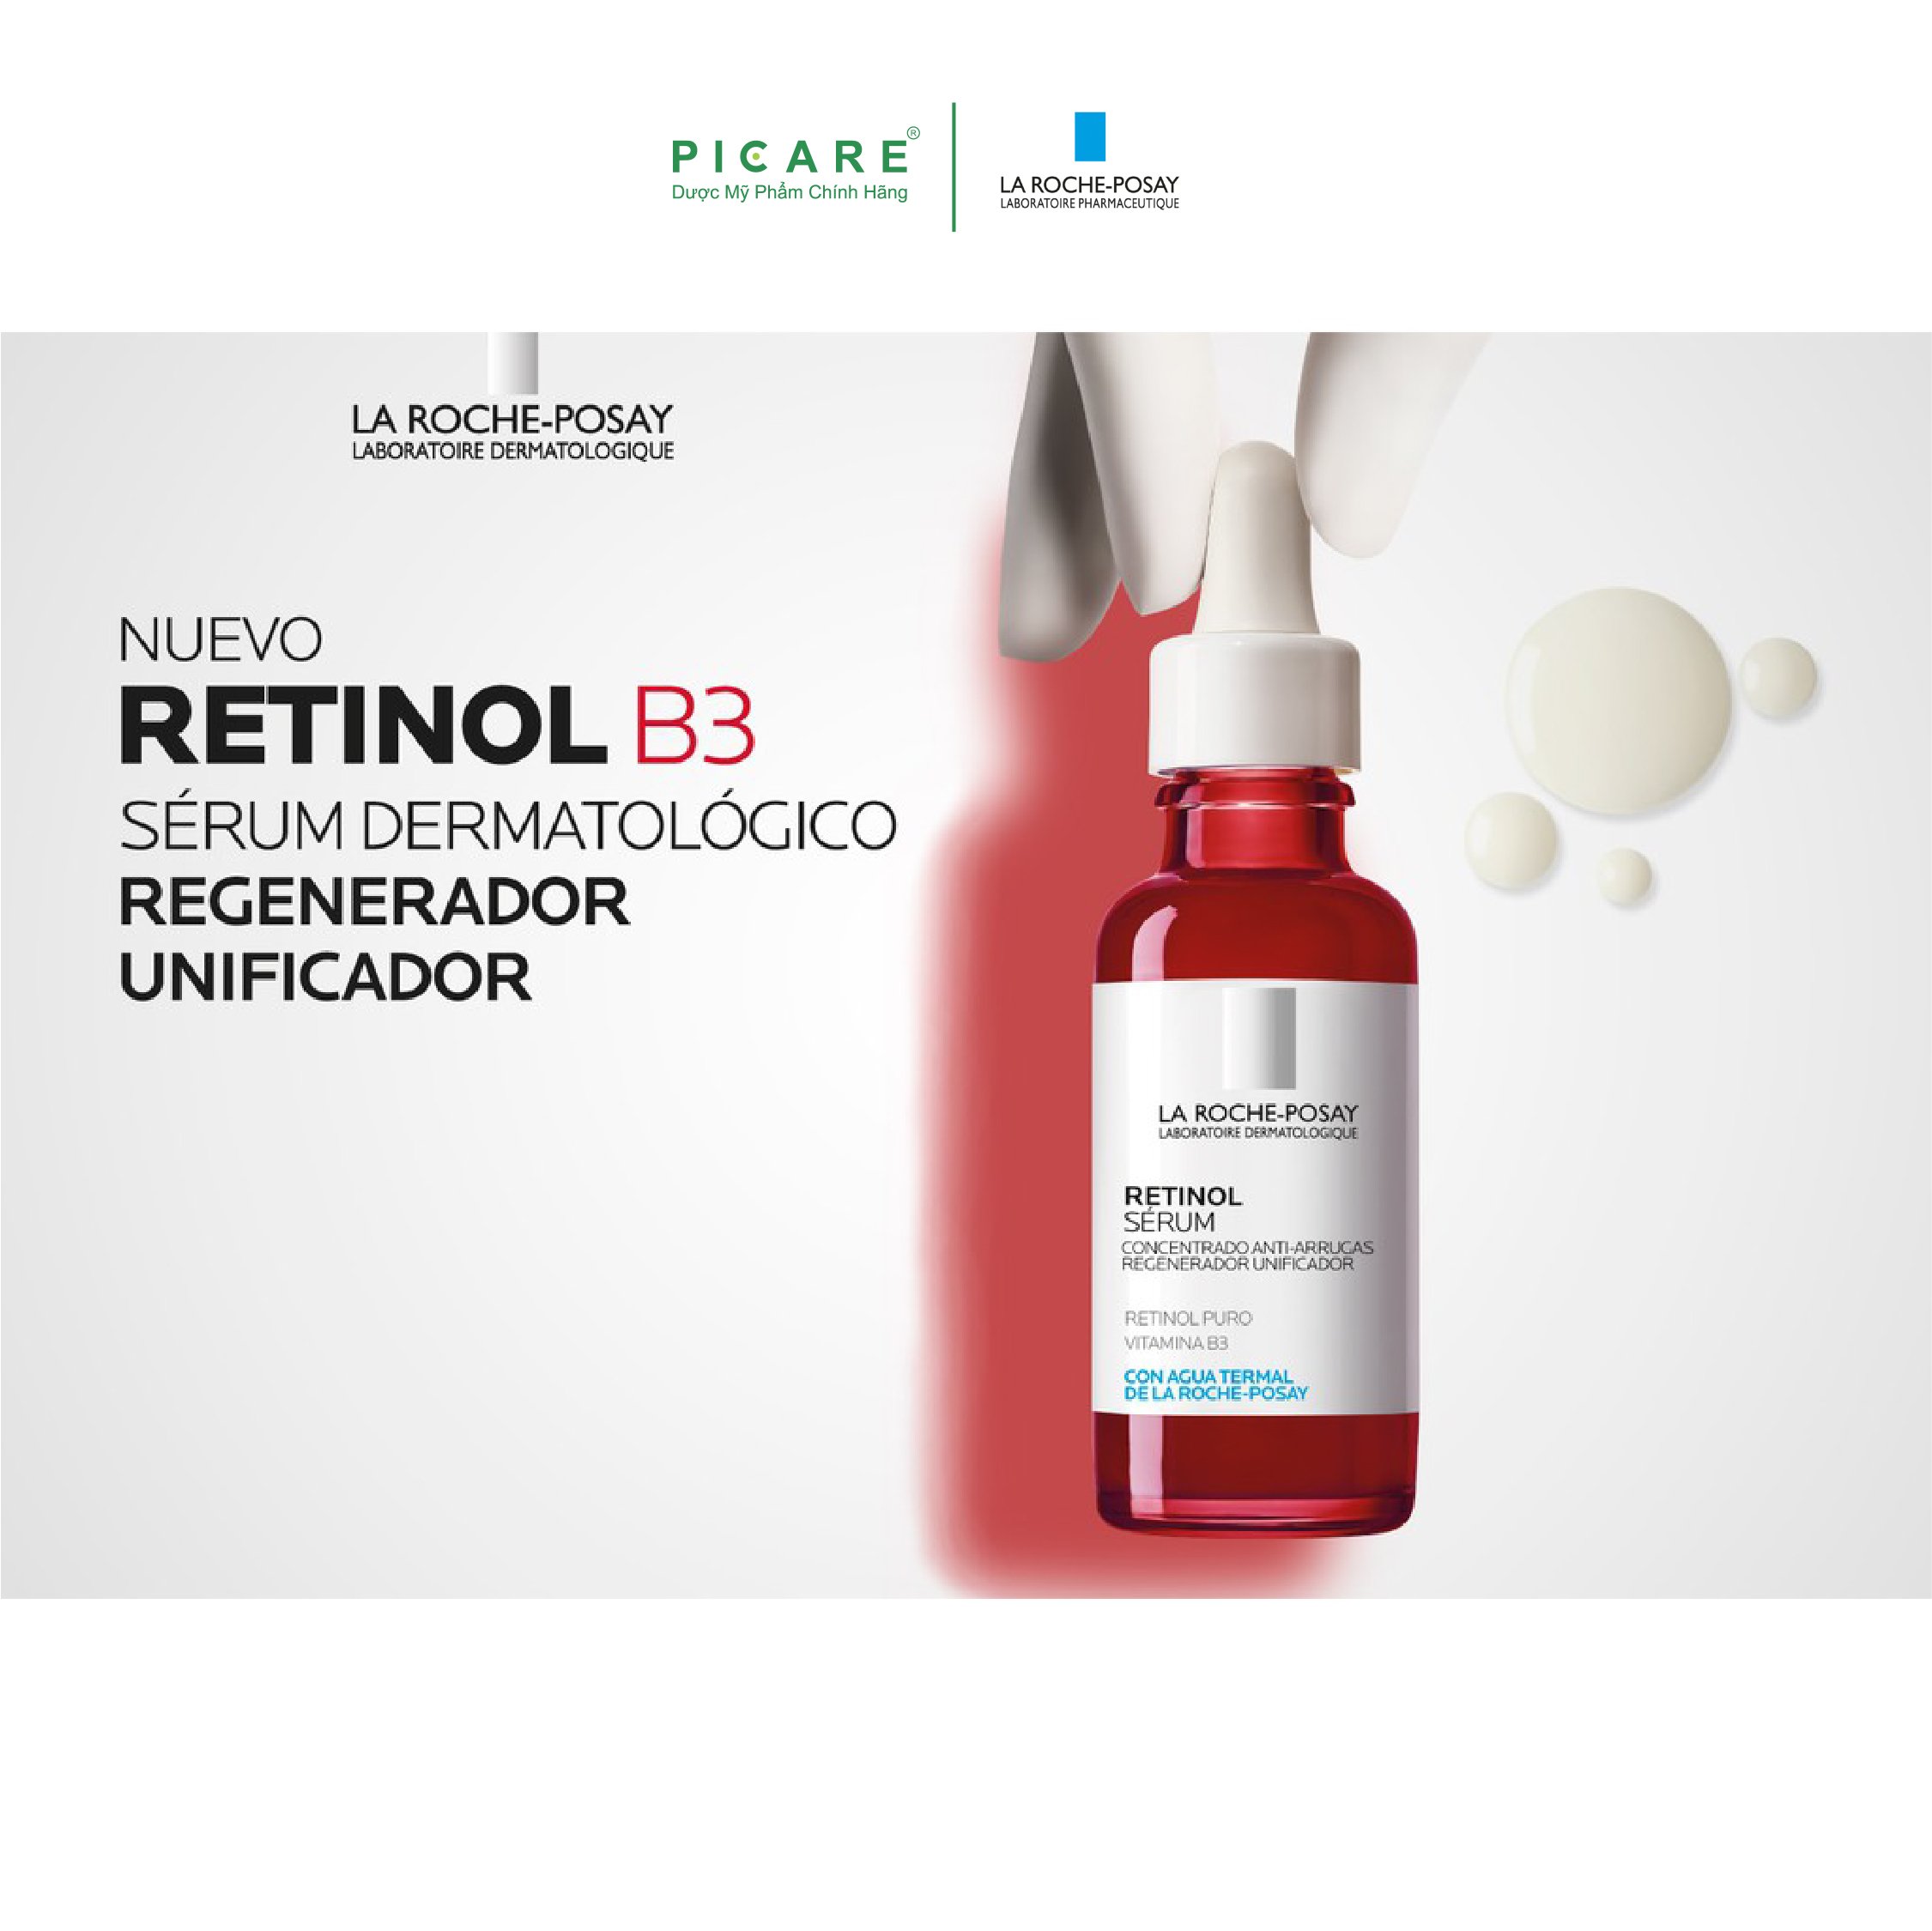 Tinh chất giúp tái tạo da, giảm thâm nám và nếp nhăn trên da, làm đều màu da La Roche Posay Retinol B3 Serum